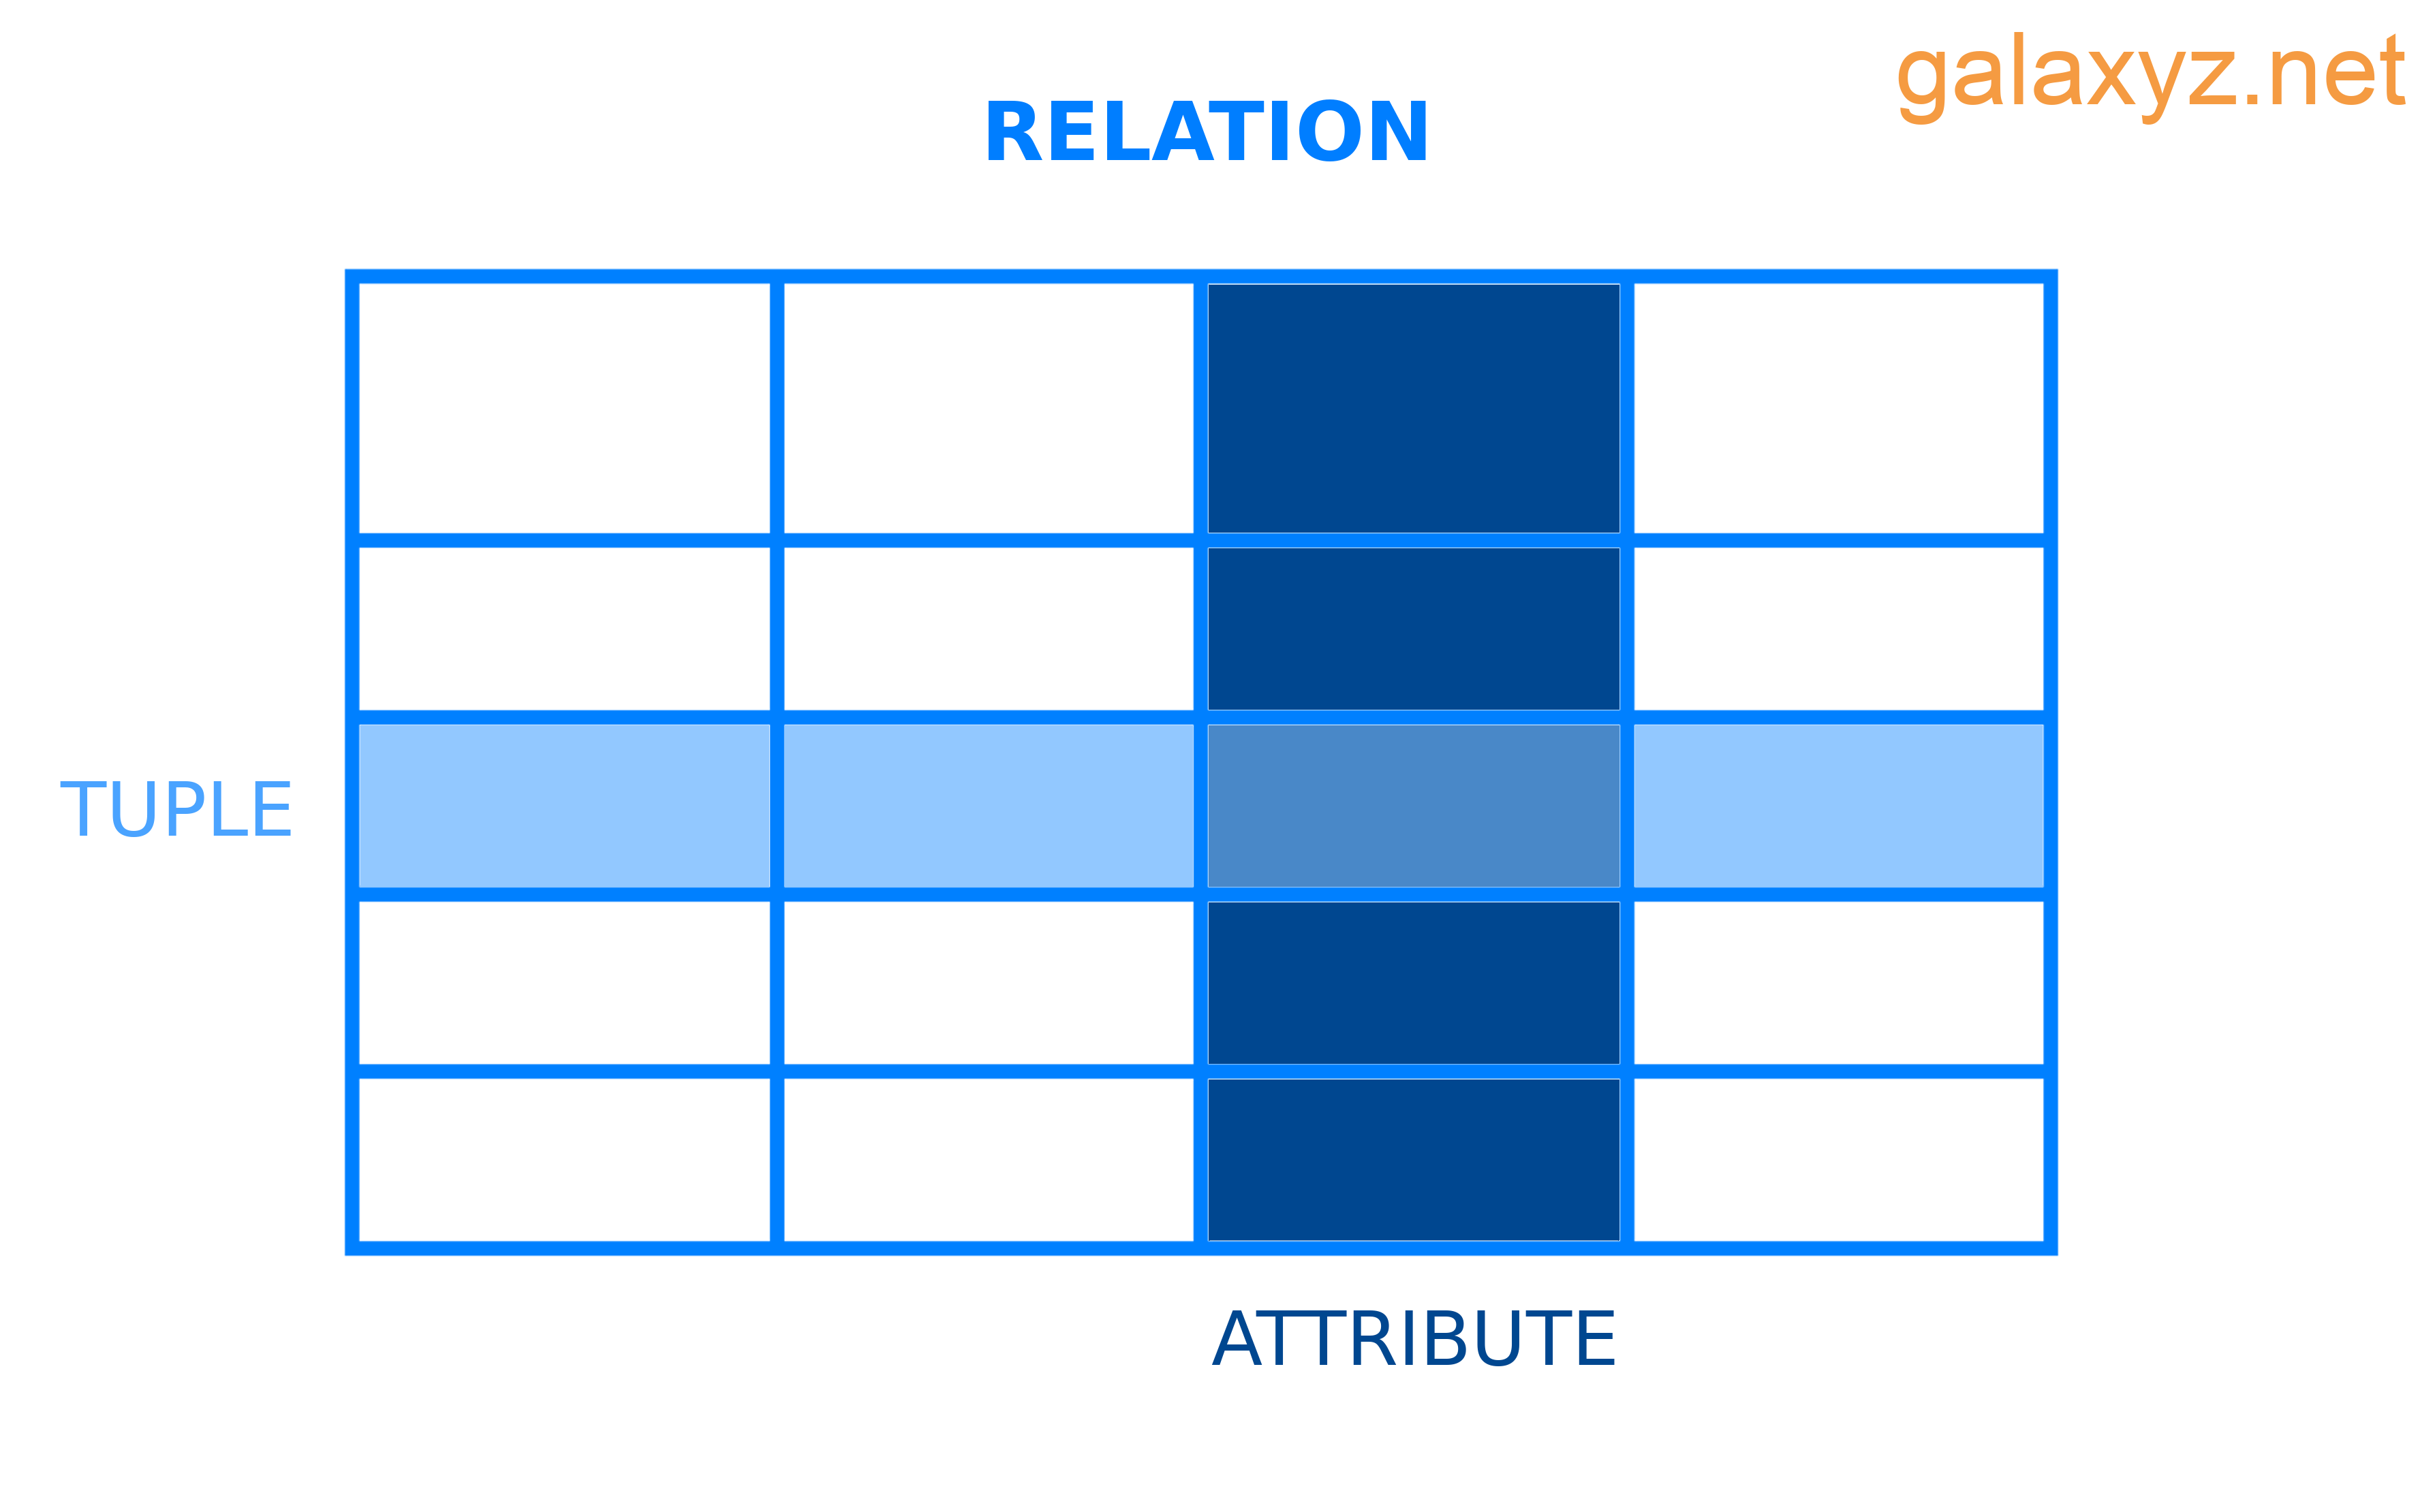 Ví dụ về sơ đồ cho thấy quan hệ, bộ giá trị và thuộc tính liên quan với nhau như thế nào